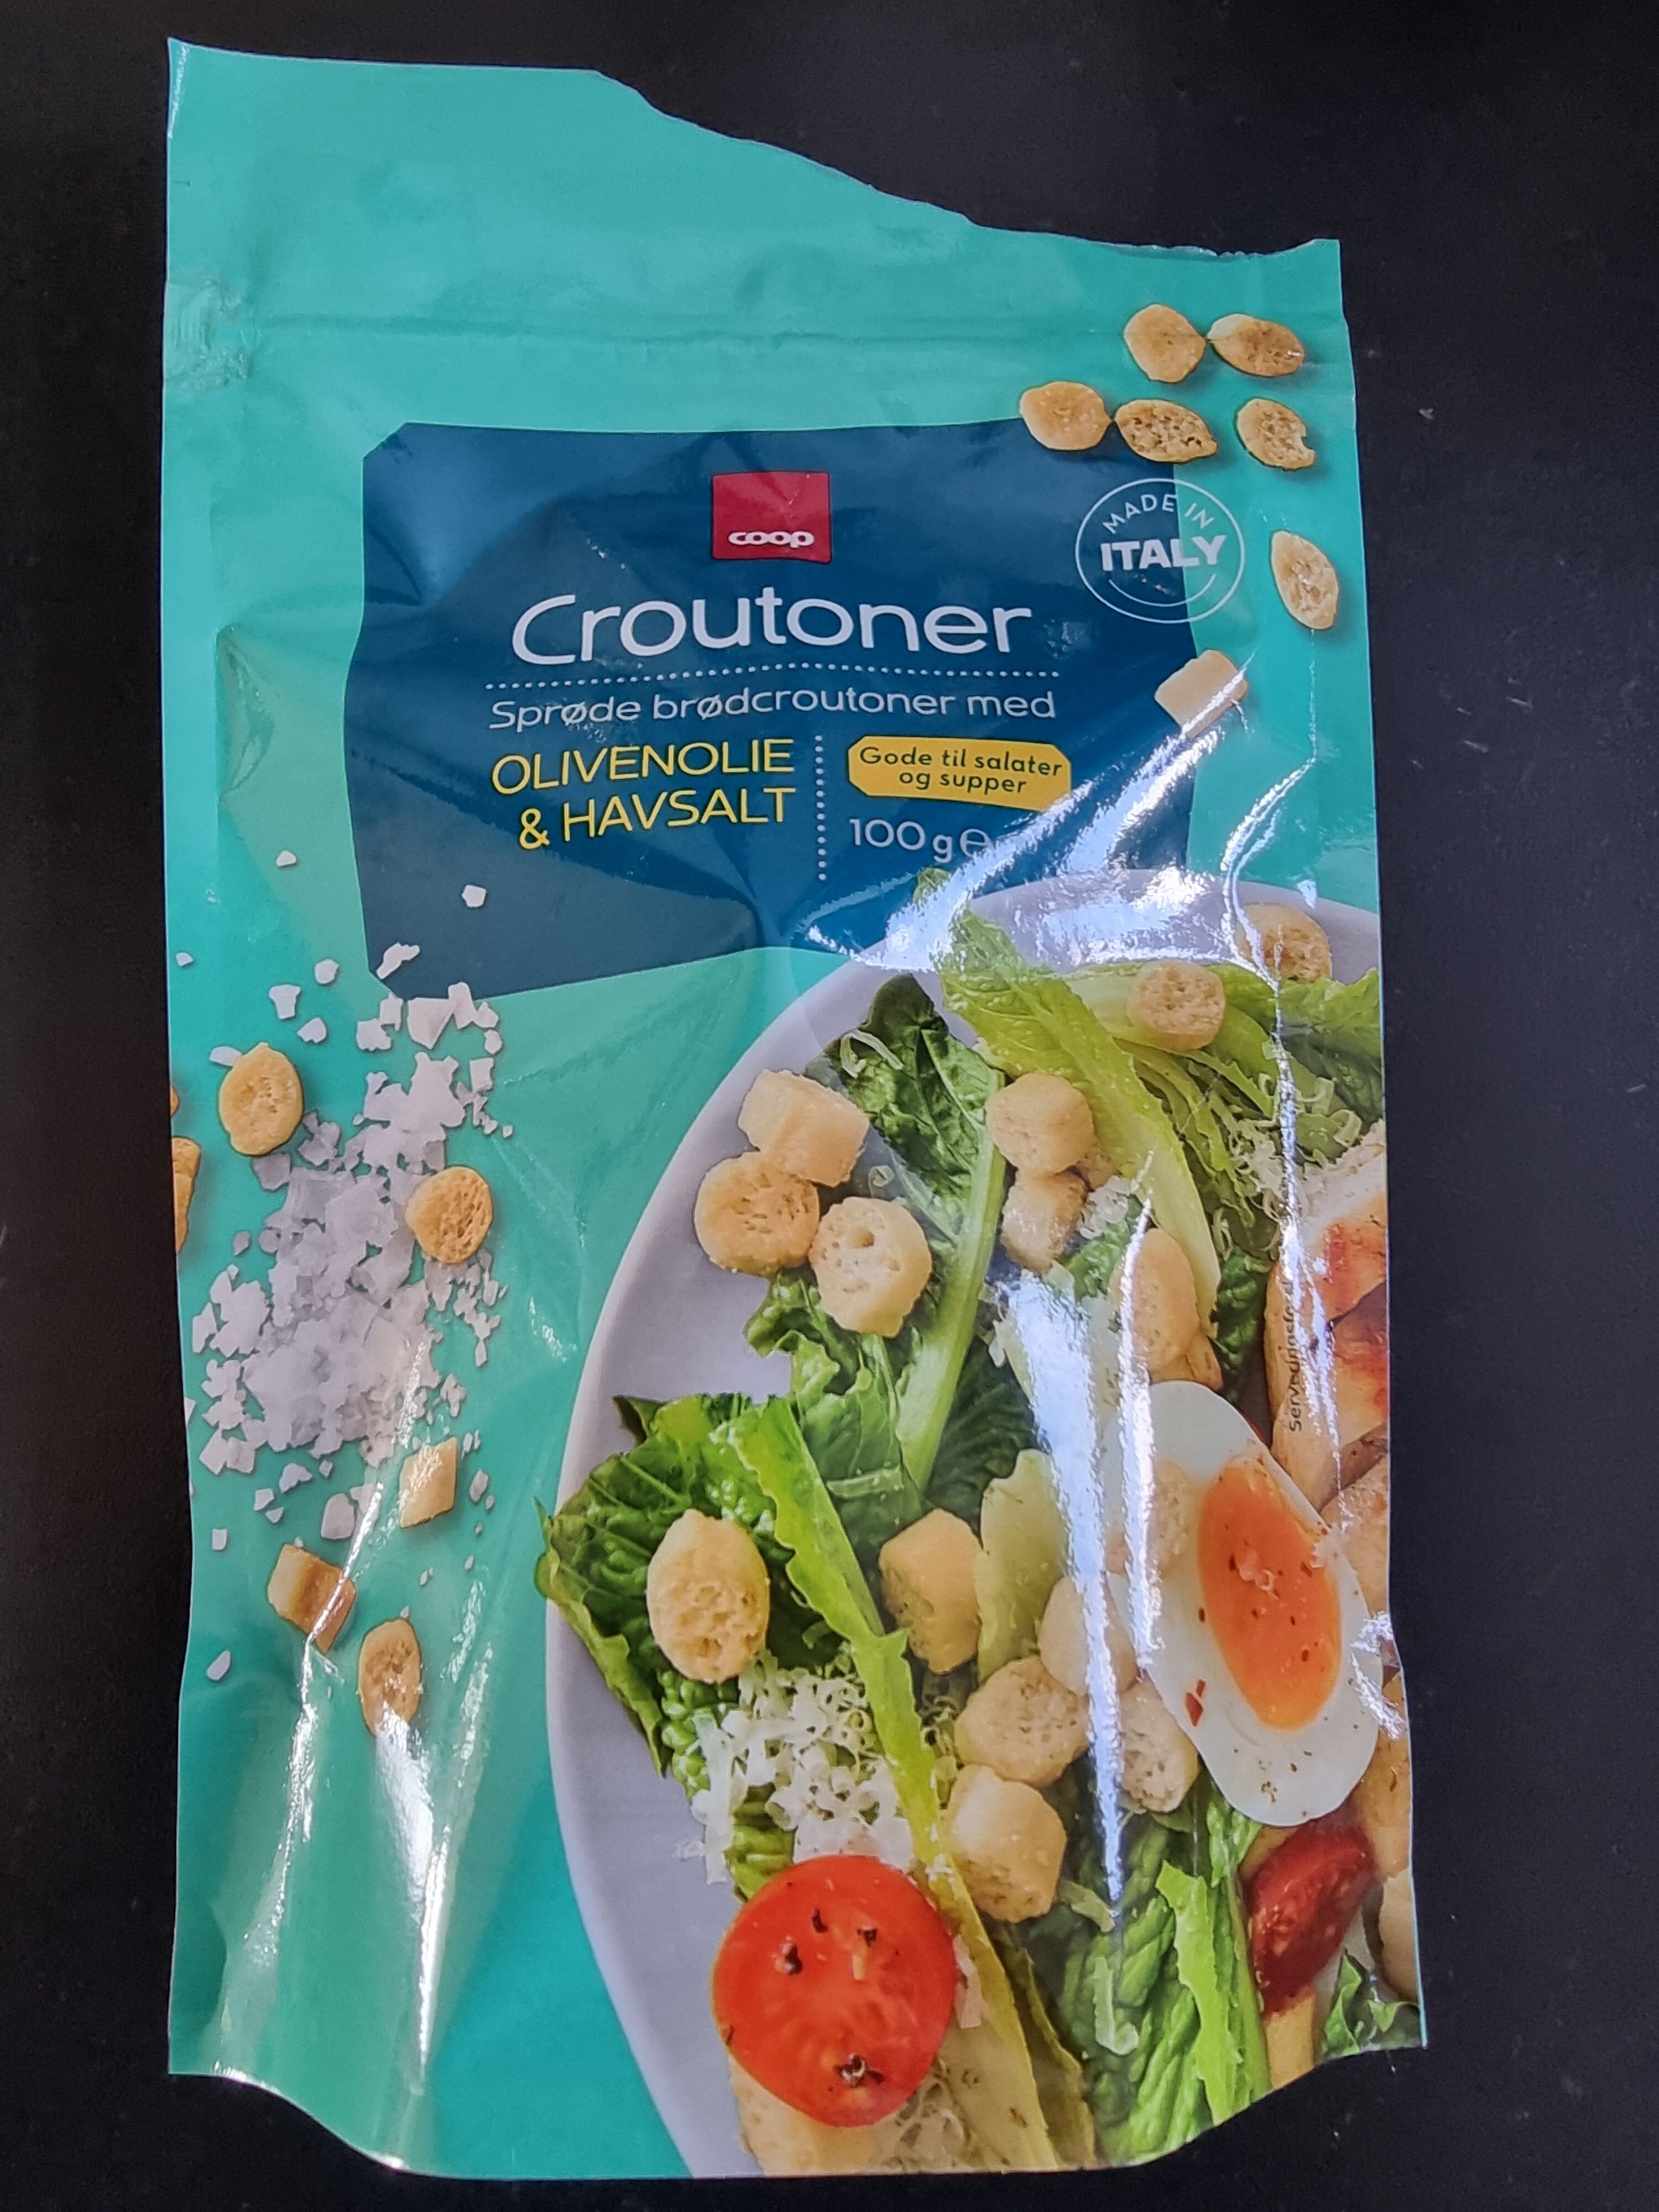 Croutoner, Coop - Produkt - en